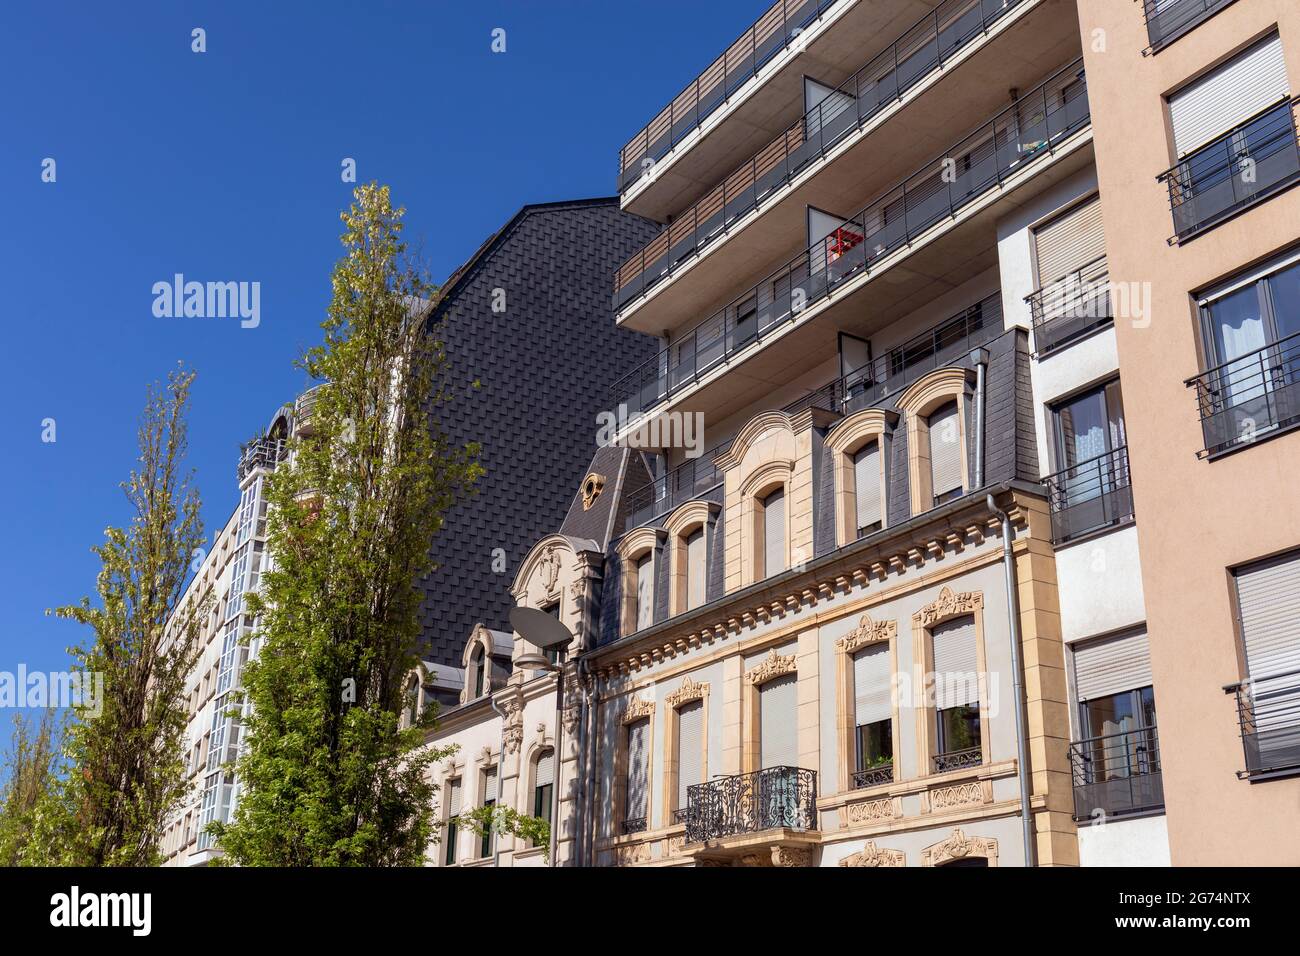 Europa, Luxemburg, Esch-sur-Alzette, umgebaute traditionelle Apartments mit modernen Wohnungen, die oben am Boulevard John Fitzgerald Kennedy erbaut wurden Stockfoto